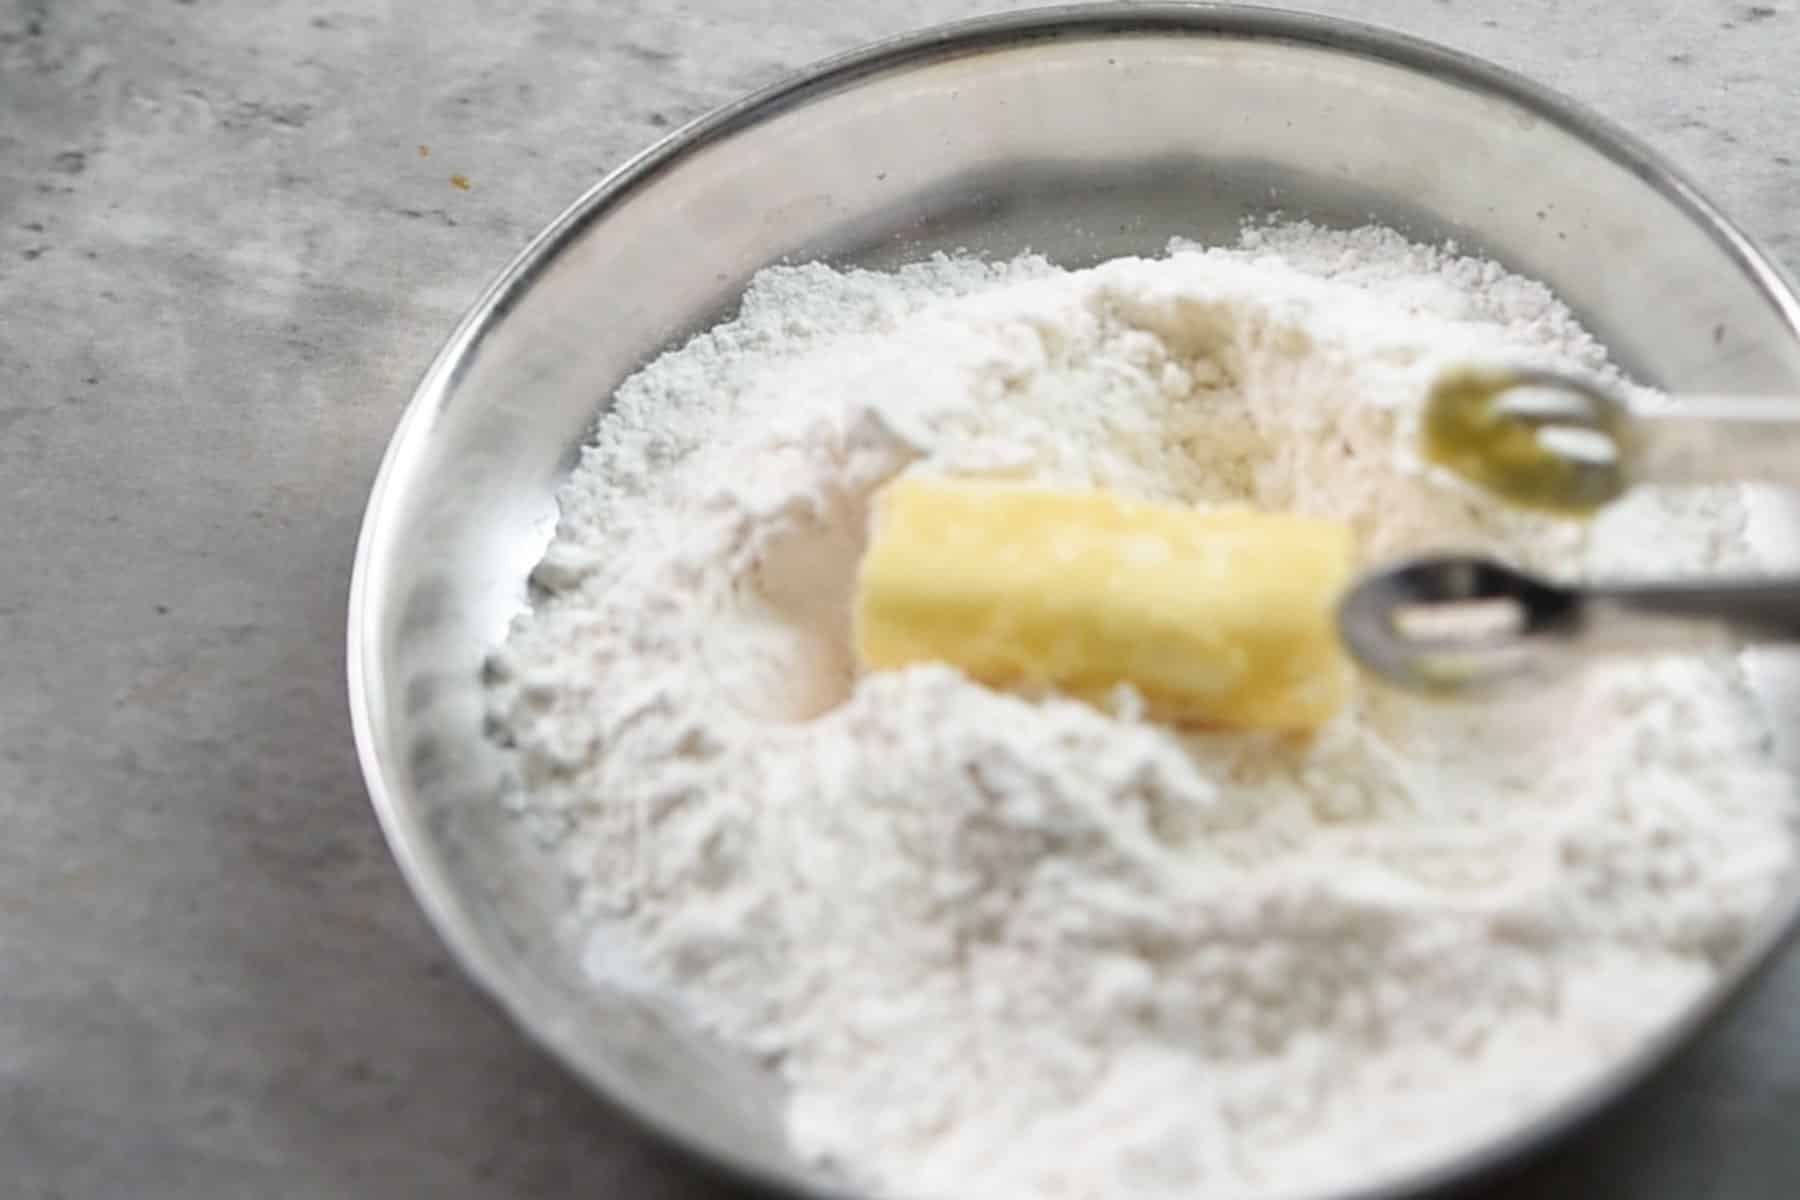 step 3: dip in the flour